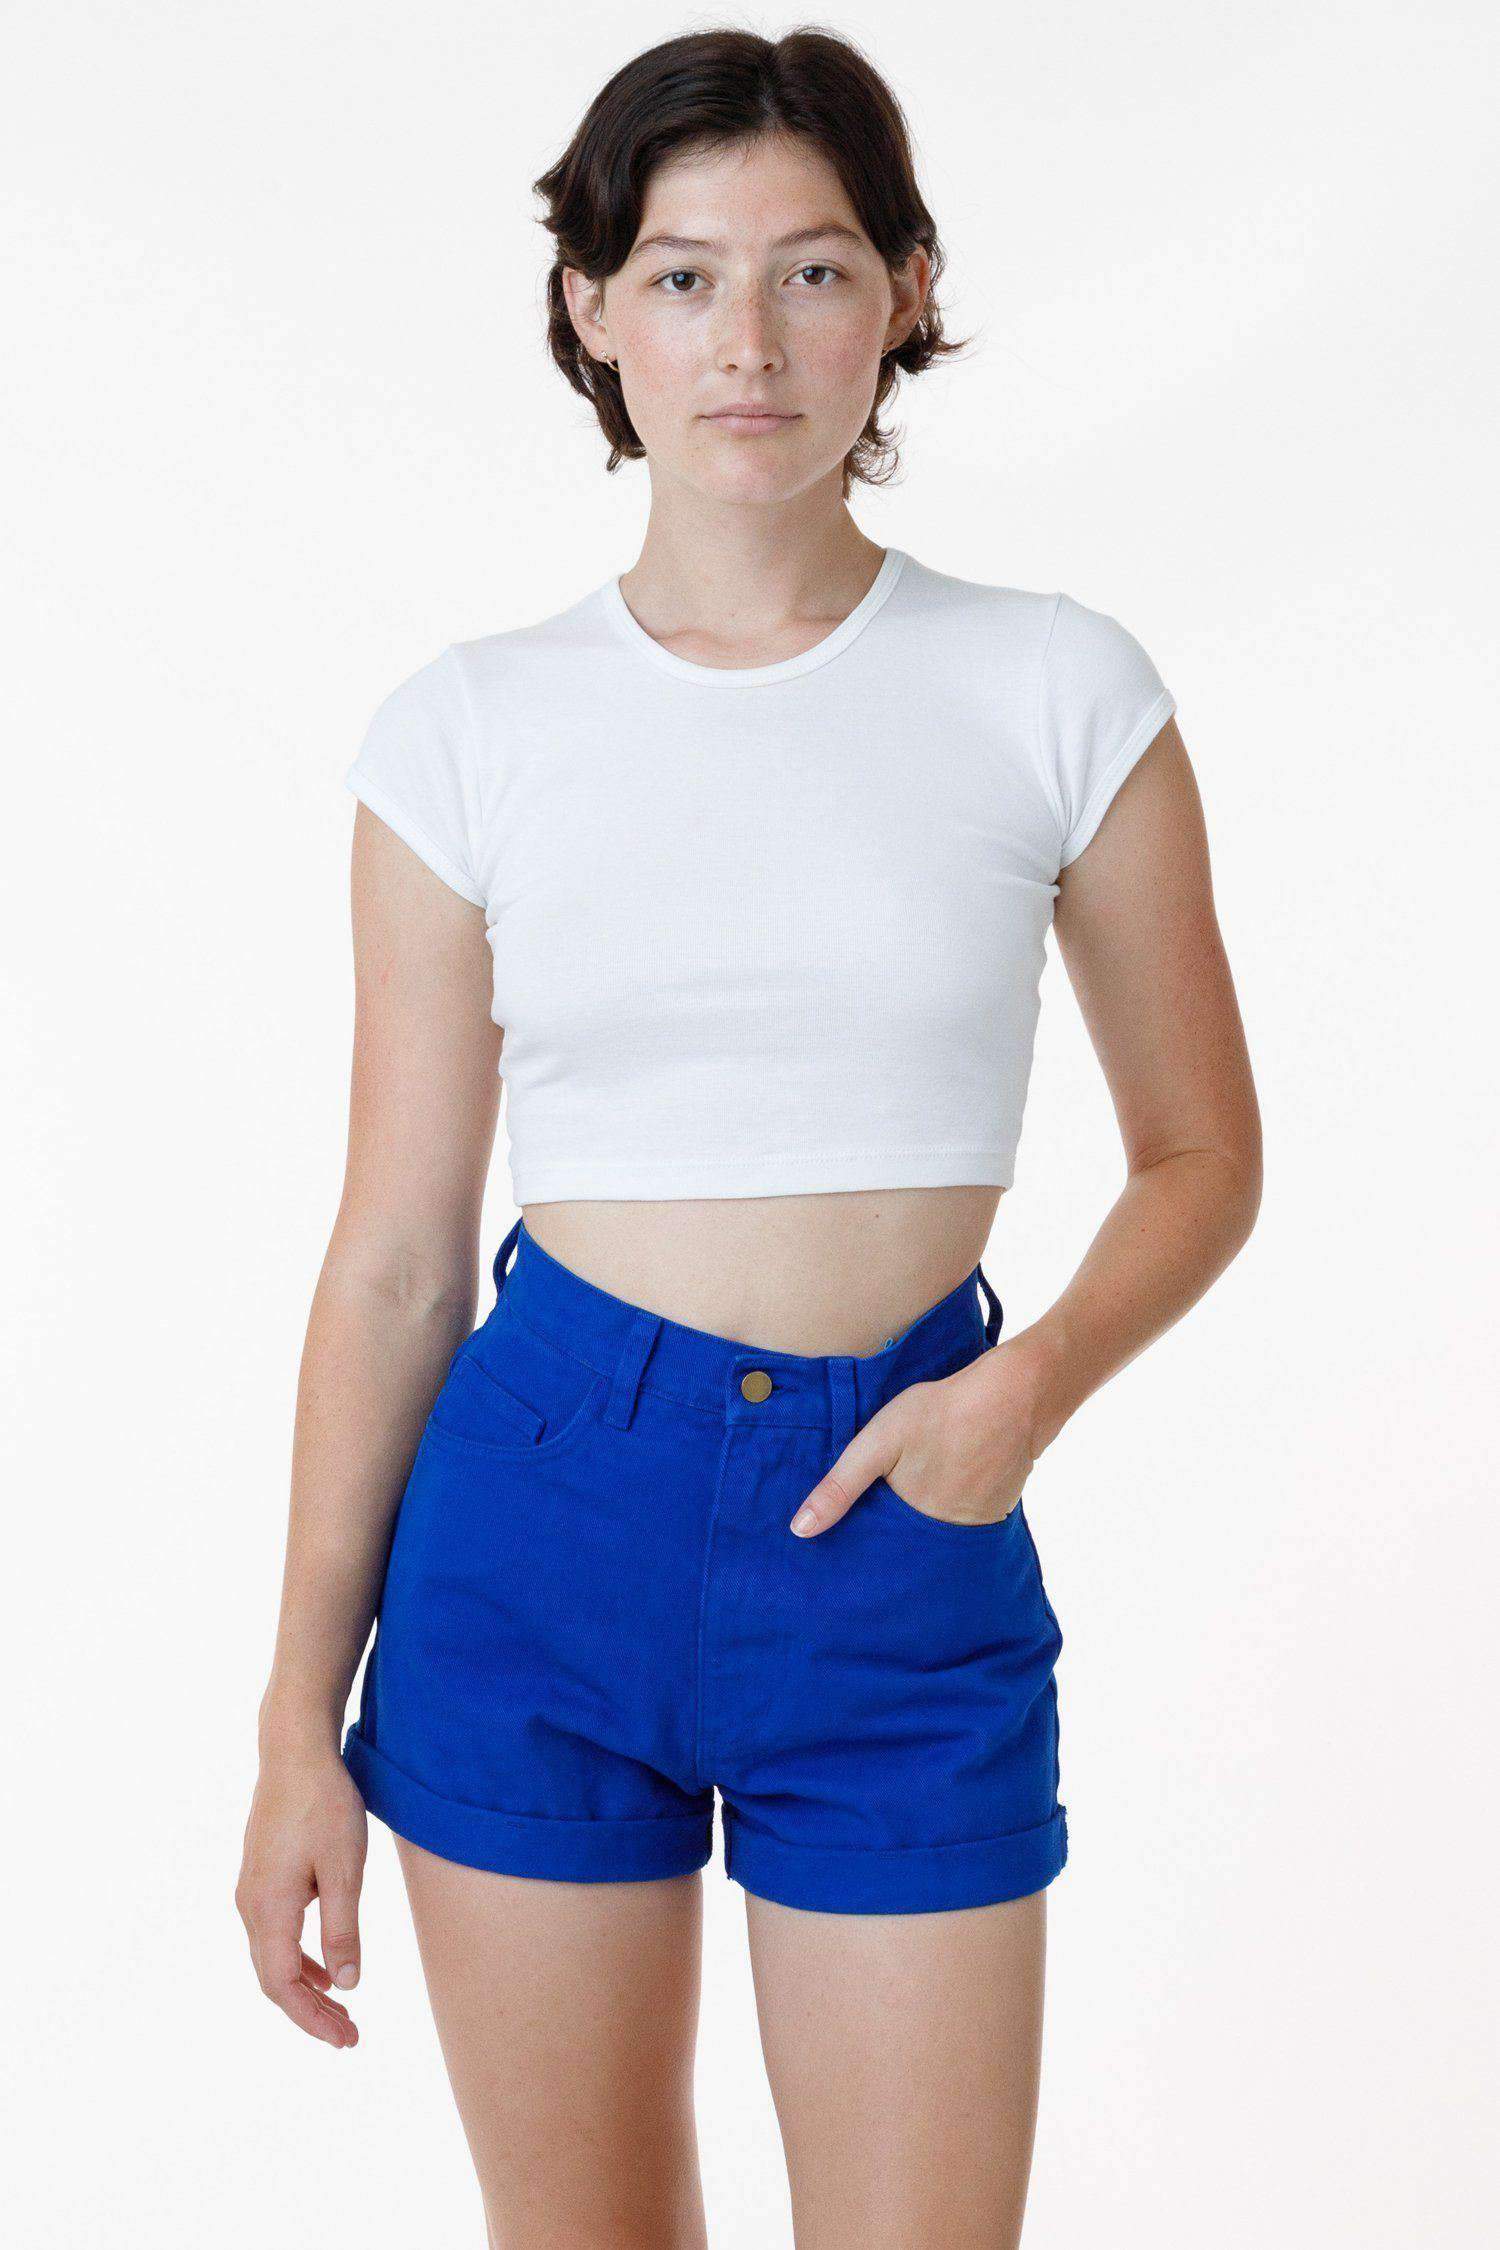 RBDW05GD - Bull Denim Garment Dye Cuff Short (Limited Edition) Shorts Los Angeles Apparel Cobalt Blue 24 